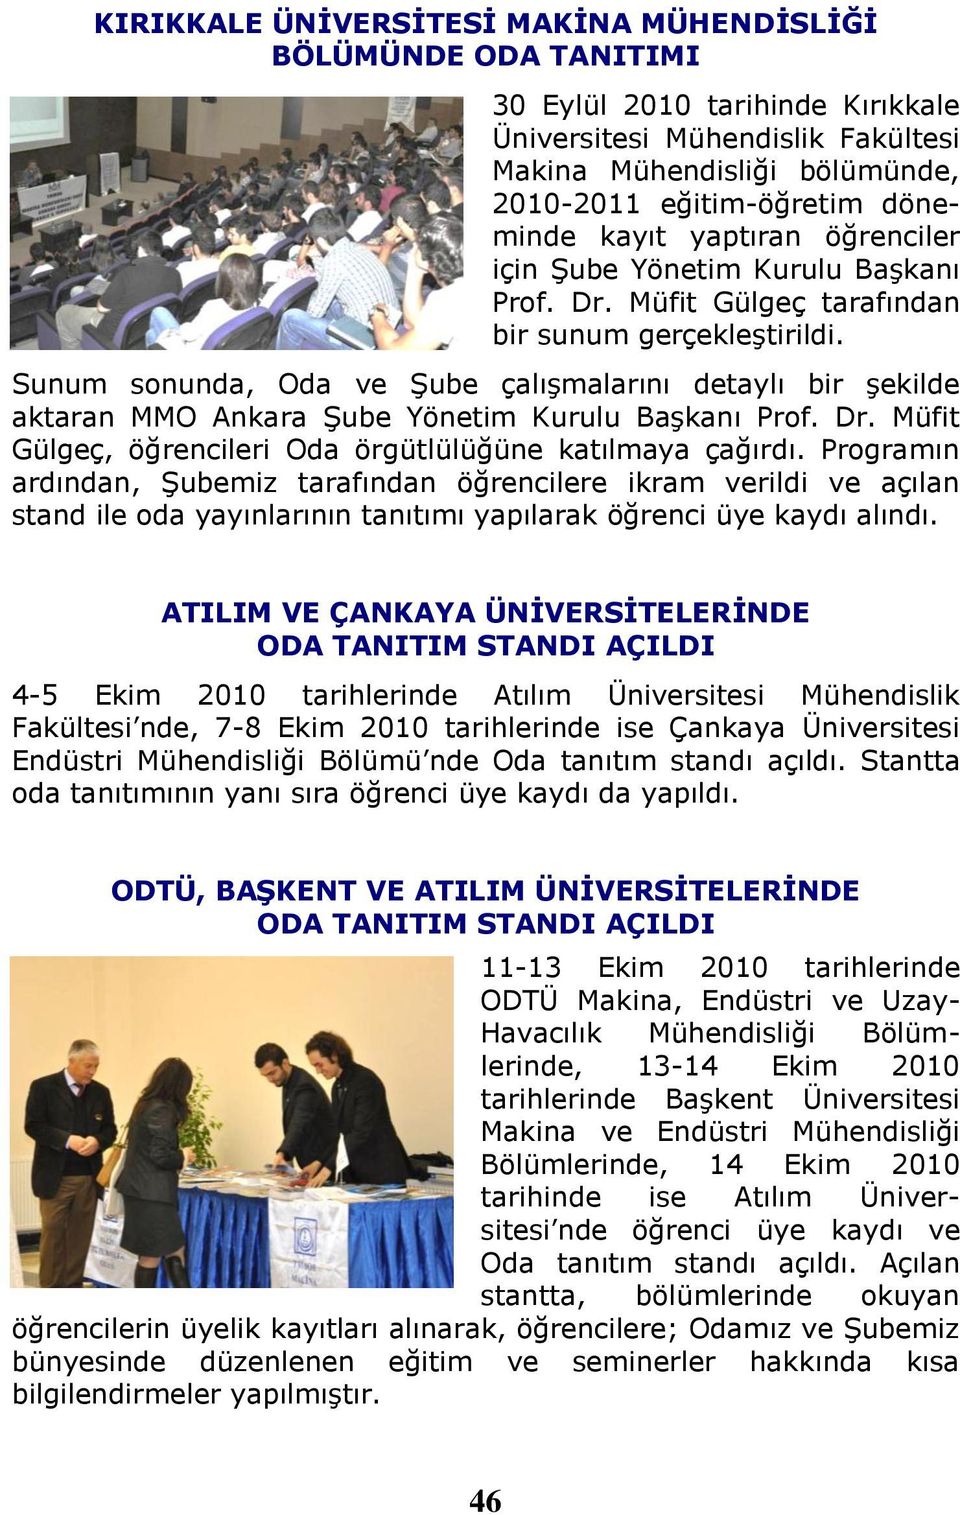 Sunum sonunda, Oda ve Şube çalışmalarını detaylı bir şekilde aktaran MMO Ankara Şube Yönetim Kurulu Başkanı Prof. Dr. Müfit Gülgeç, öğrencileri Oda örgütlülüğüne katılmaya çağırdı.